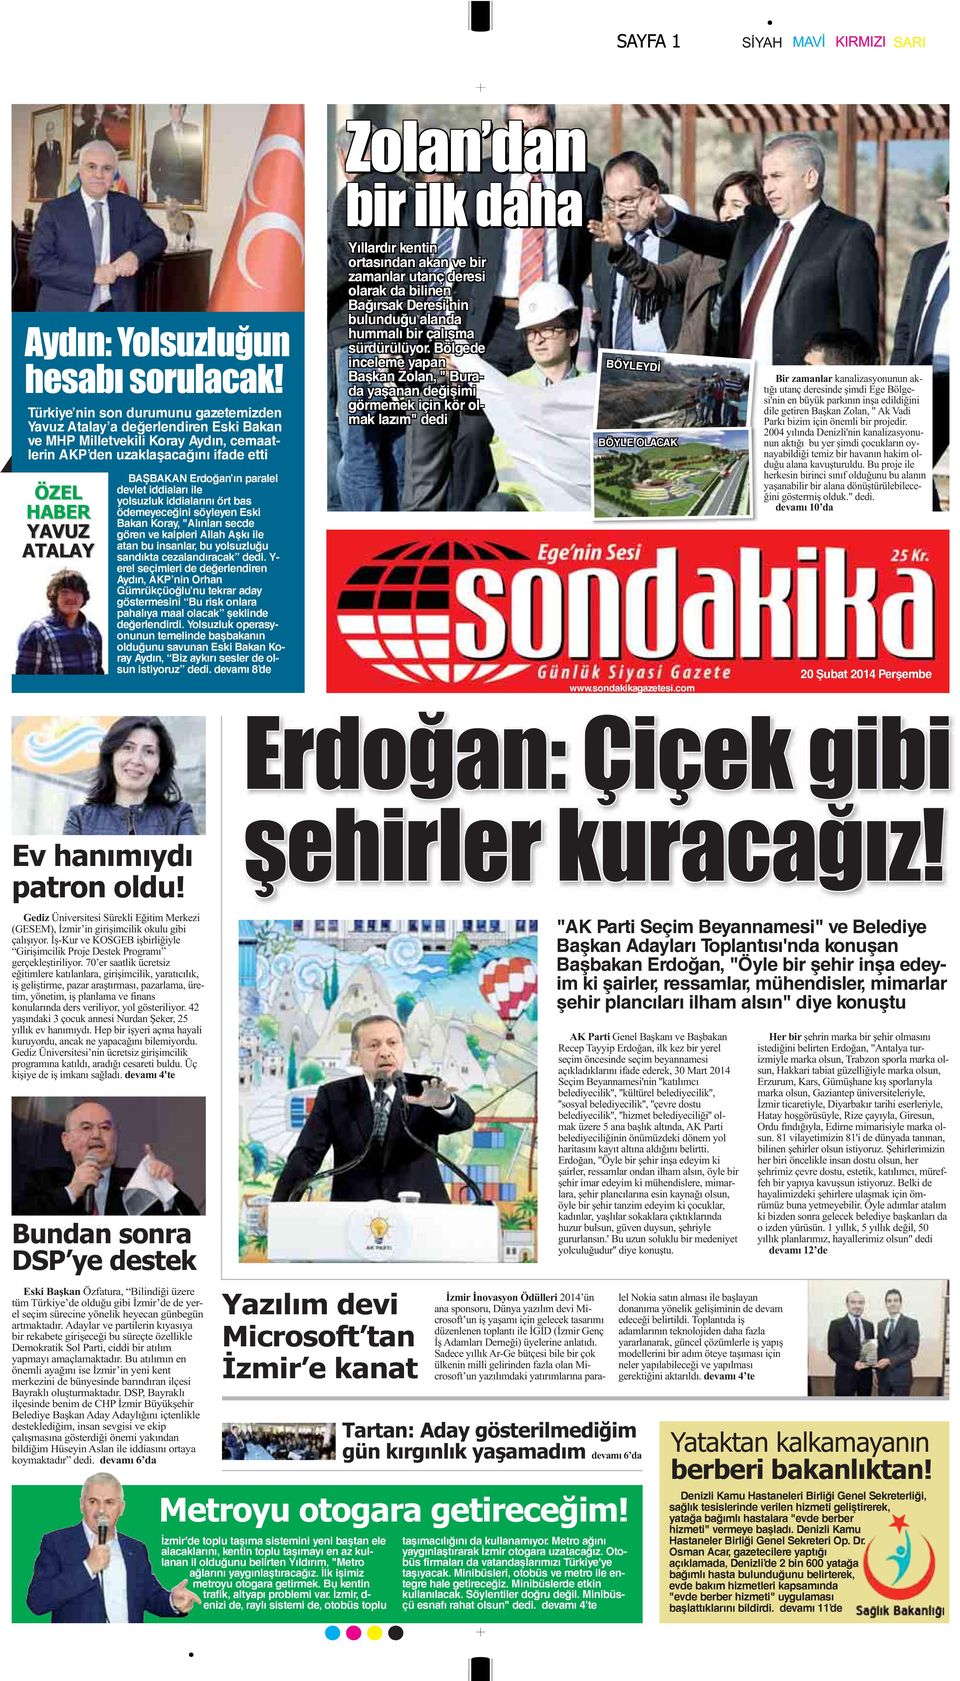 Y- erel seçimleri de değerlendiren Aydın, AKP nin Orhan Gümrükçüoğlu nu tekrar aday göstermesini Bu risk onlara pahalıya maal olacak şeklinde değerlendirdi.